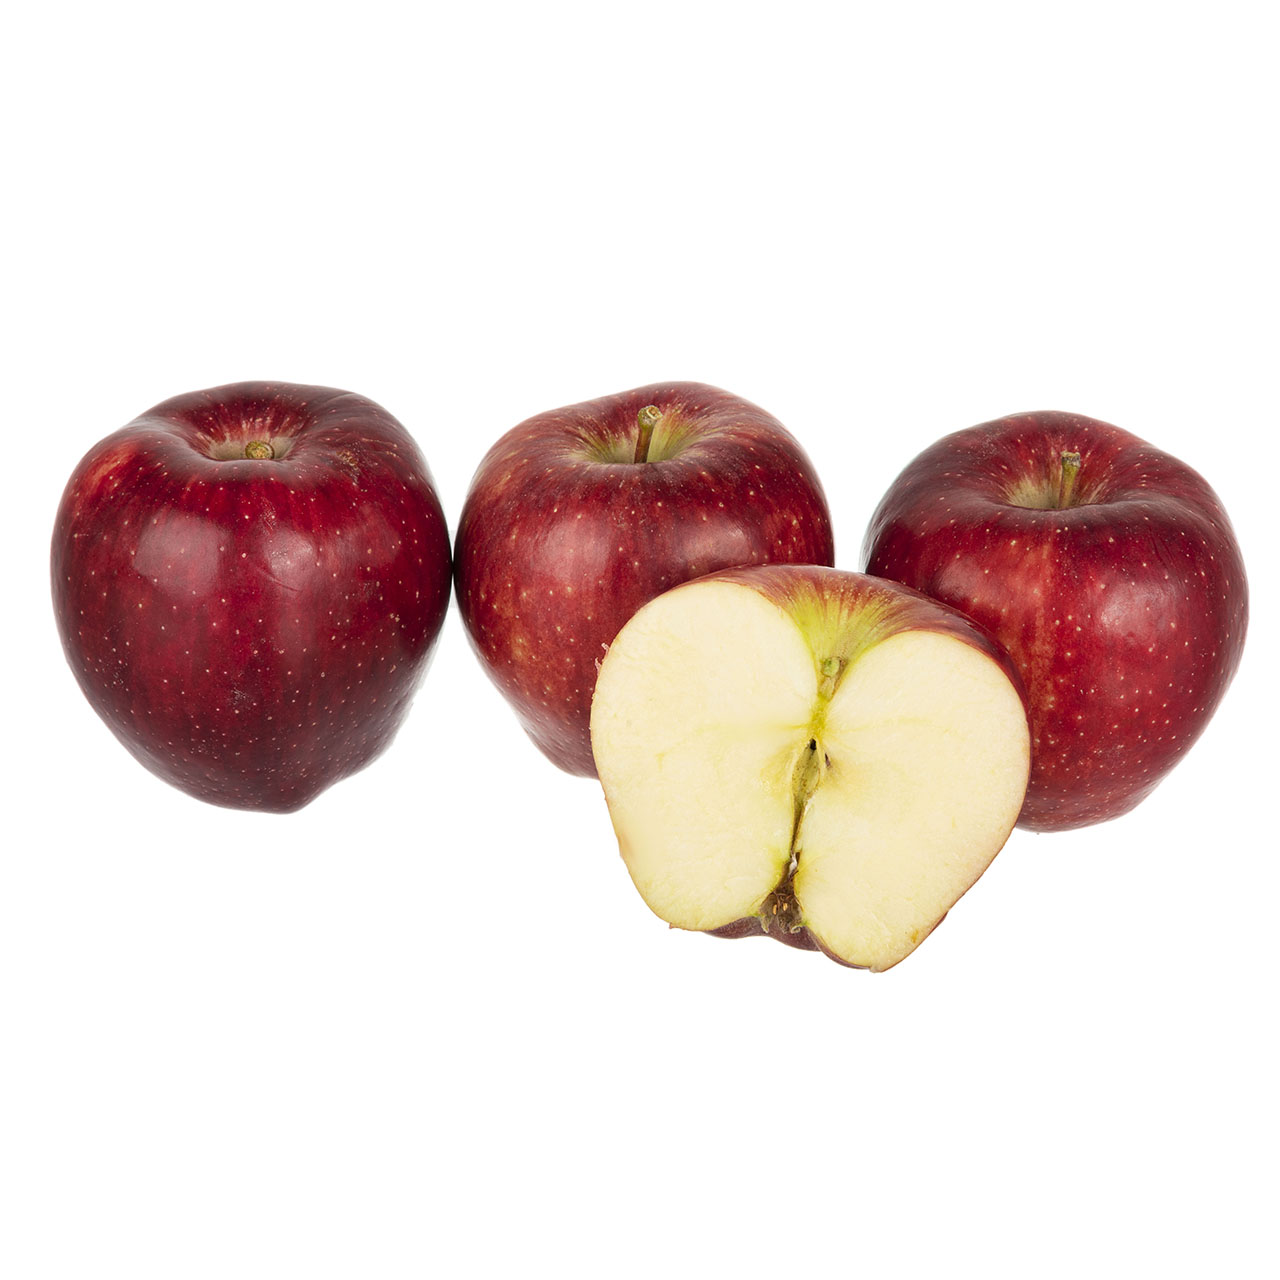 سیب قرمز دماوند فله - 1 کیلوگرم